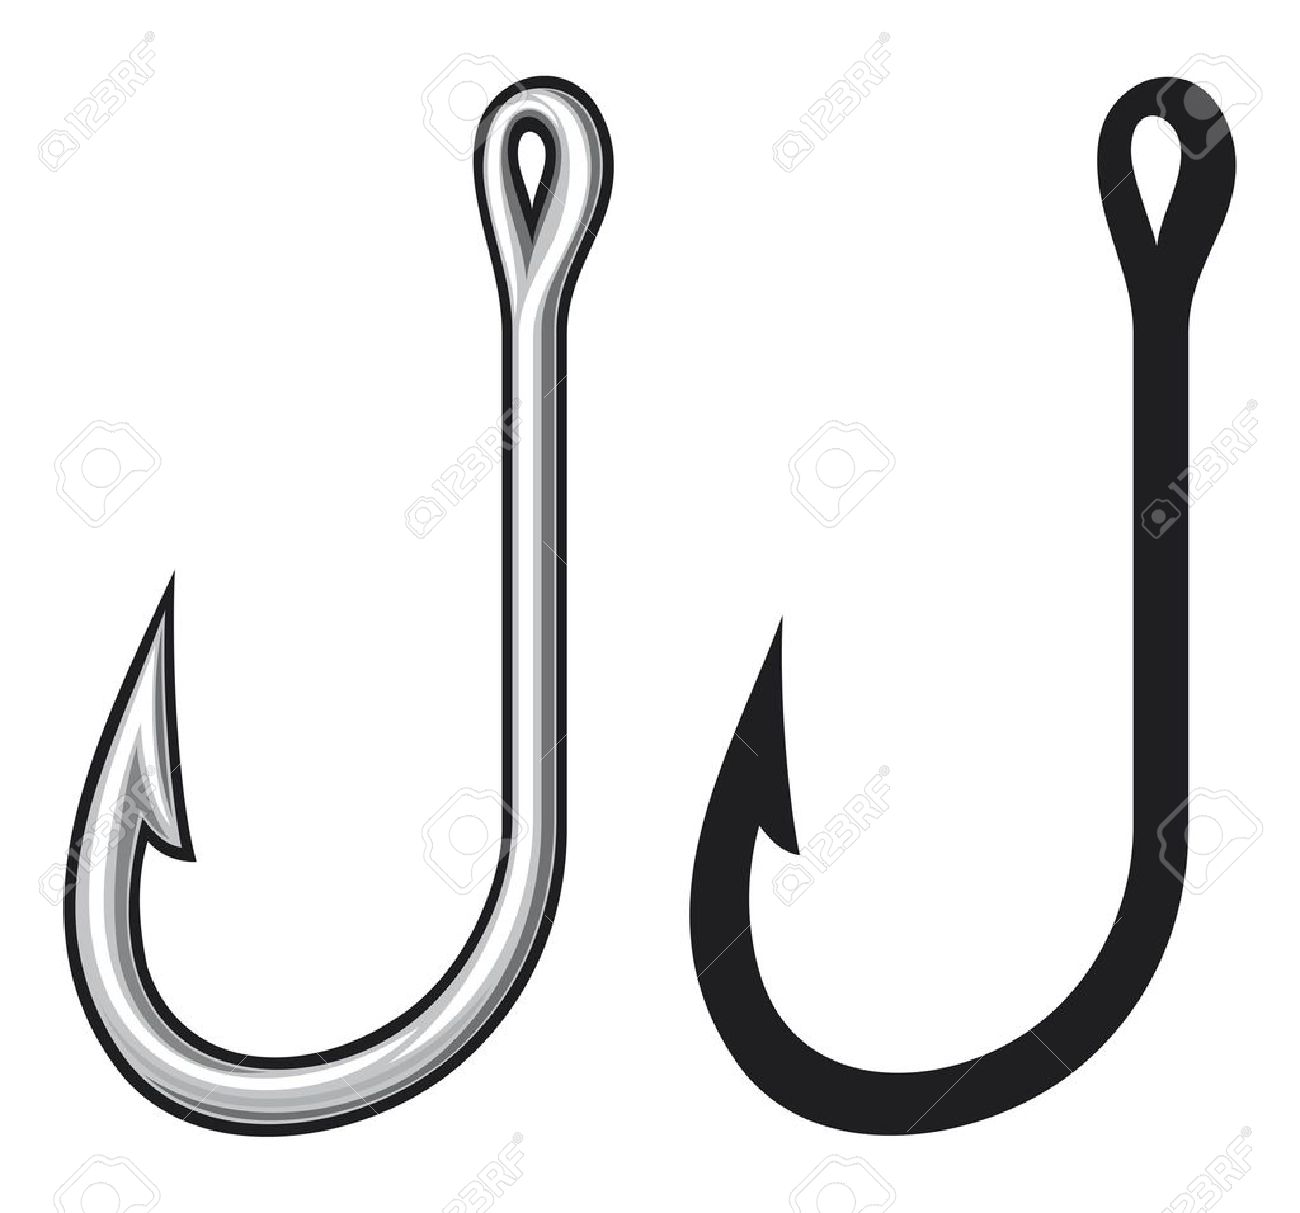 Hook cliparts. Hook Clip Art - Fish Hook Clip Art